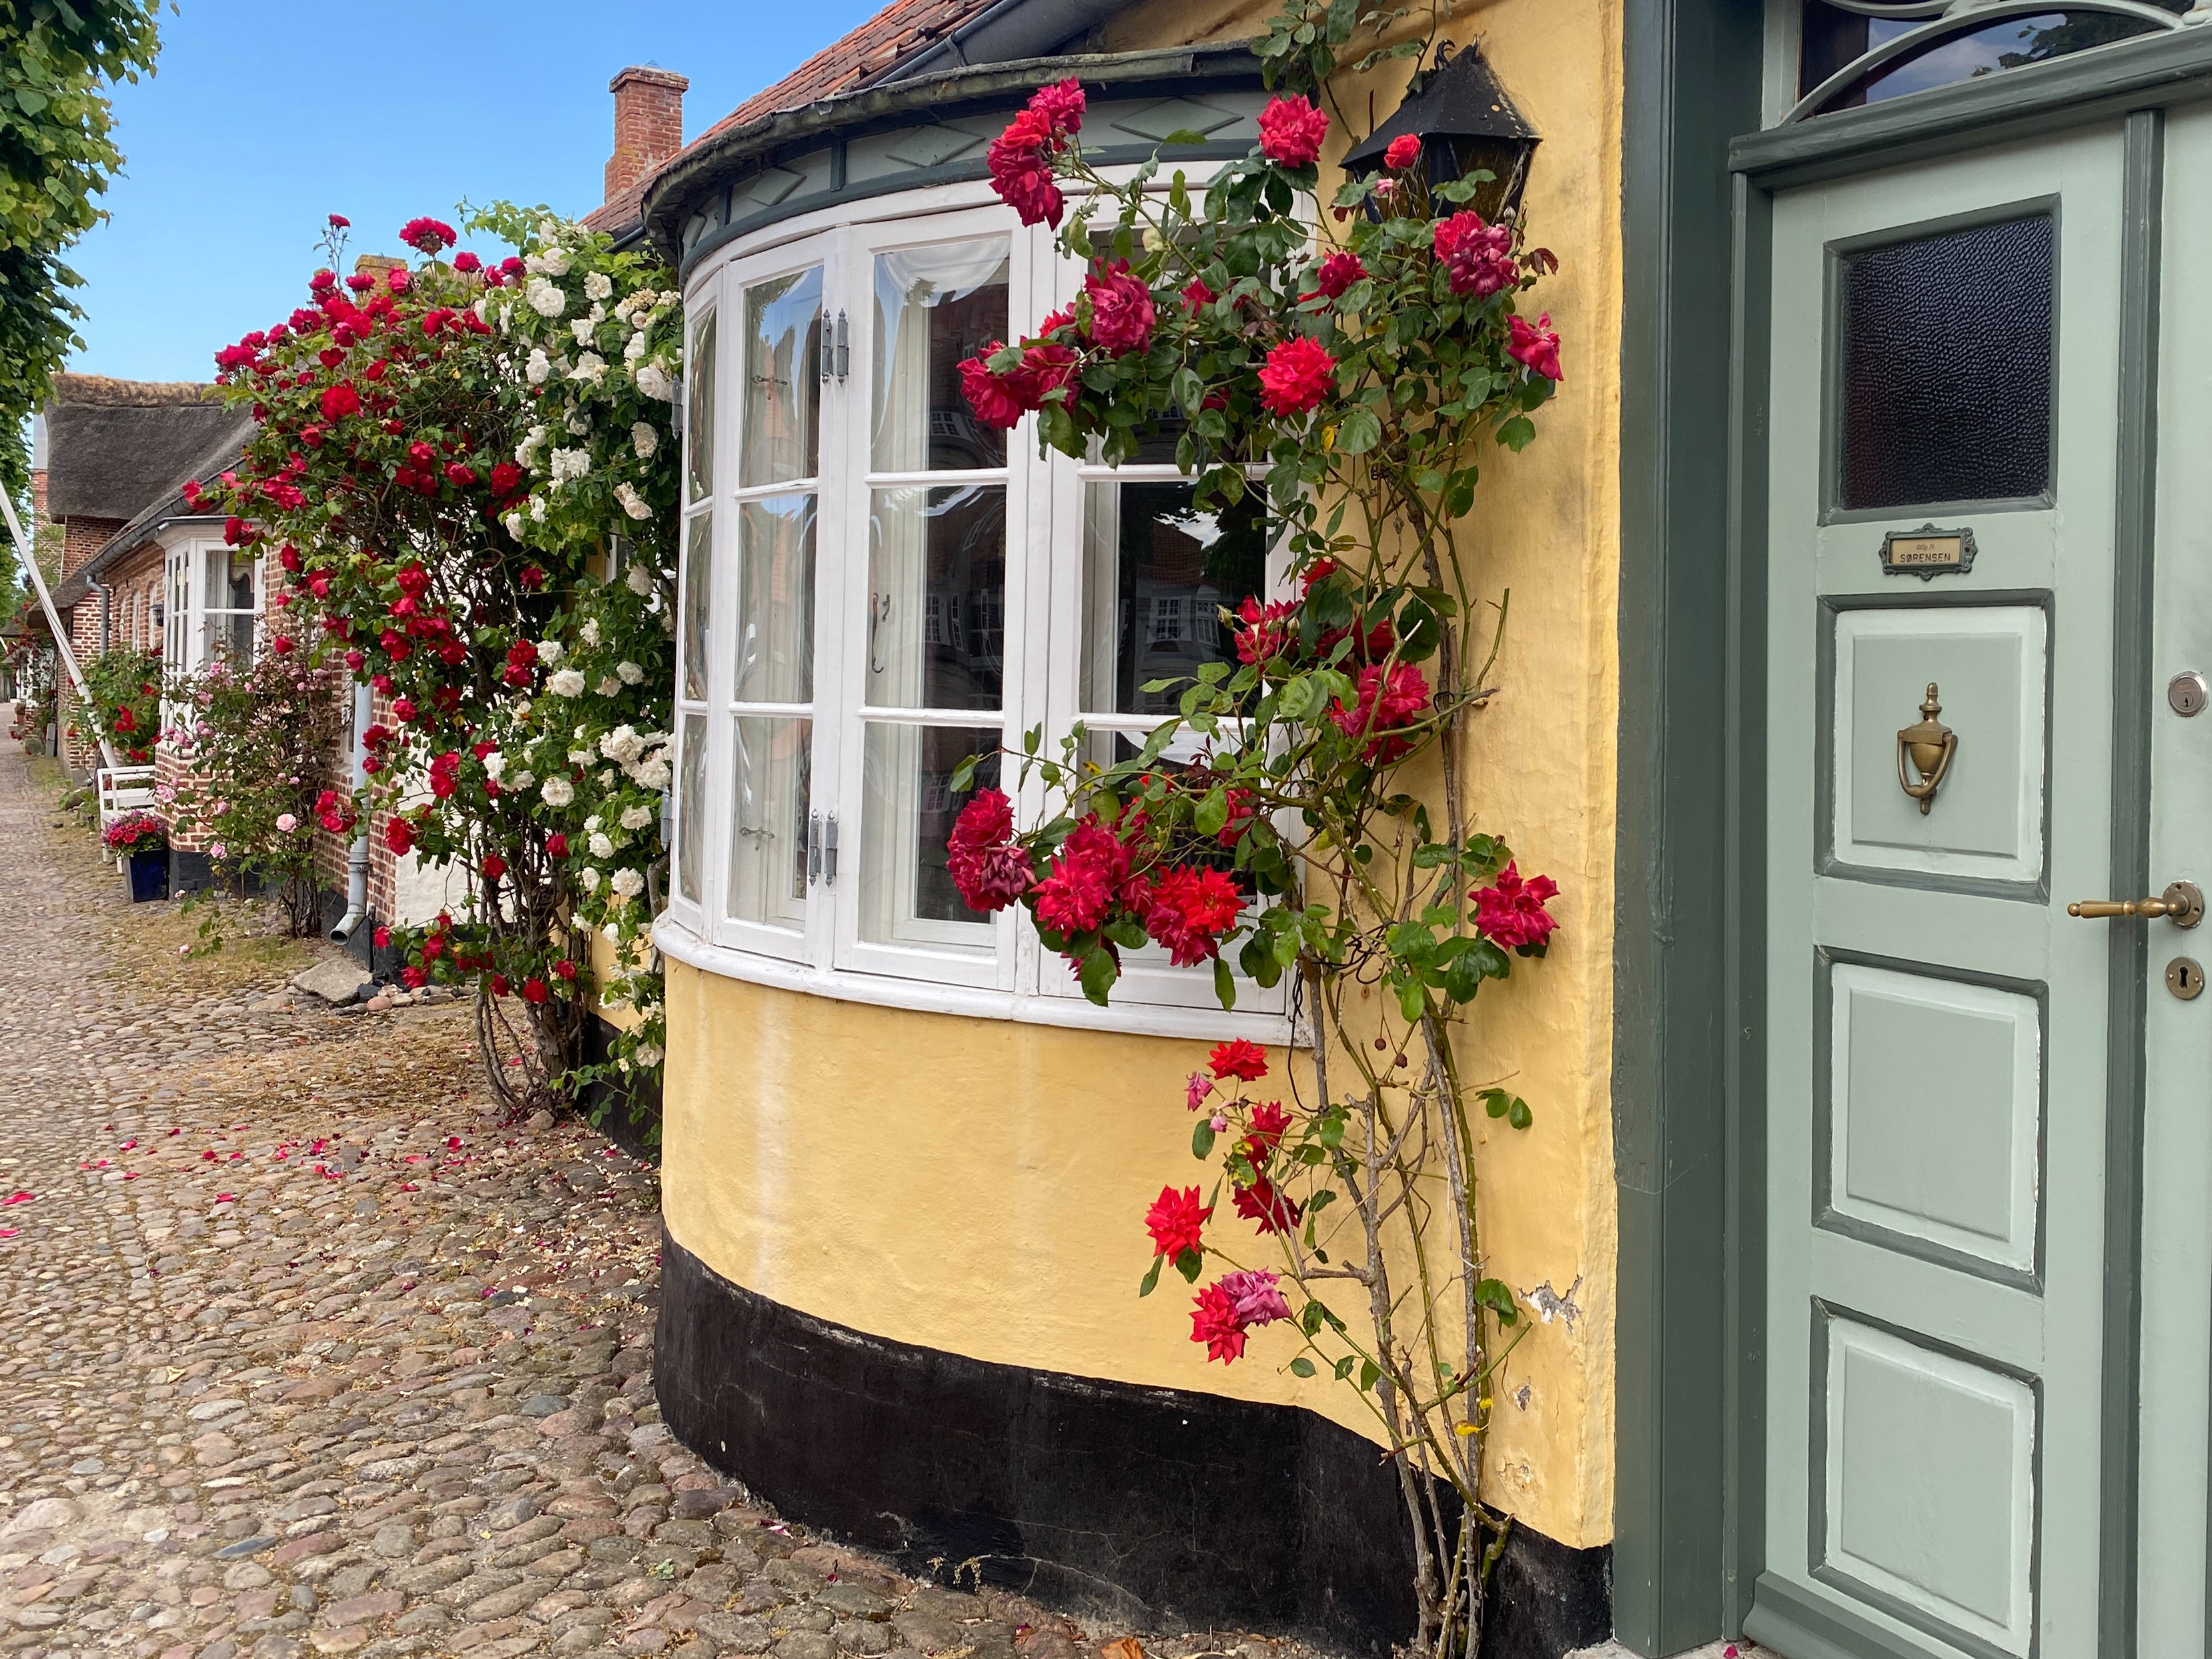 Rosy outlook: the main street in Møgeltønder, Denmark